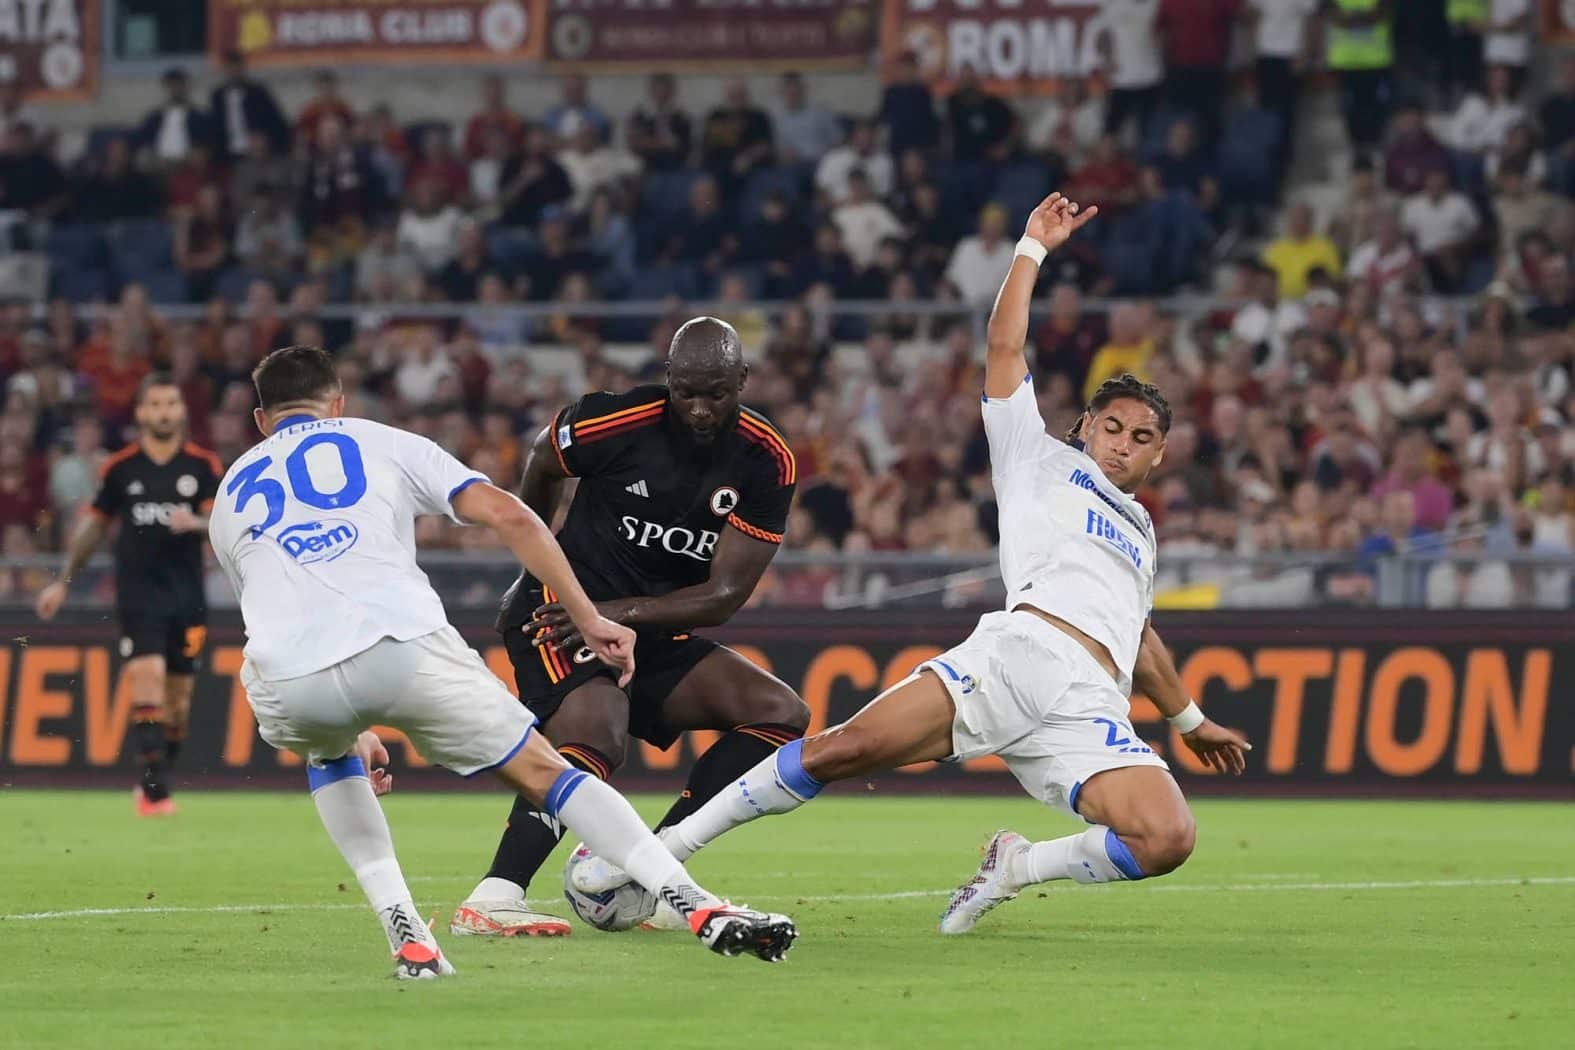 Lukaku làm động tác giả loại trung vệ Frosinone trước khi dứt điểm ghi bàn mở tỷ số cho Roma trong trận thắng 2-0 ở vòng 7 Serie A ngày 1/10. Ảnh: asroma.it